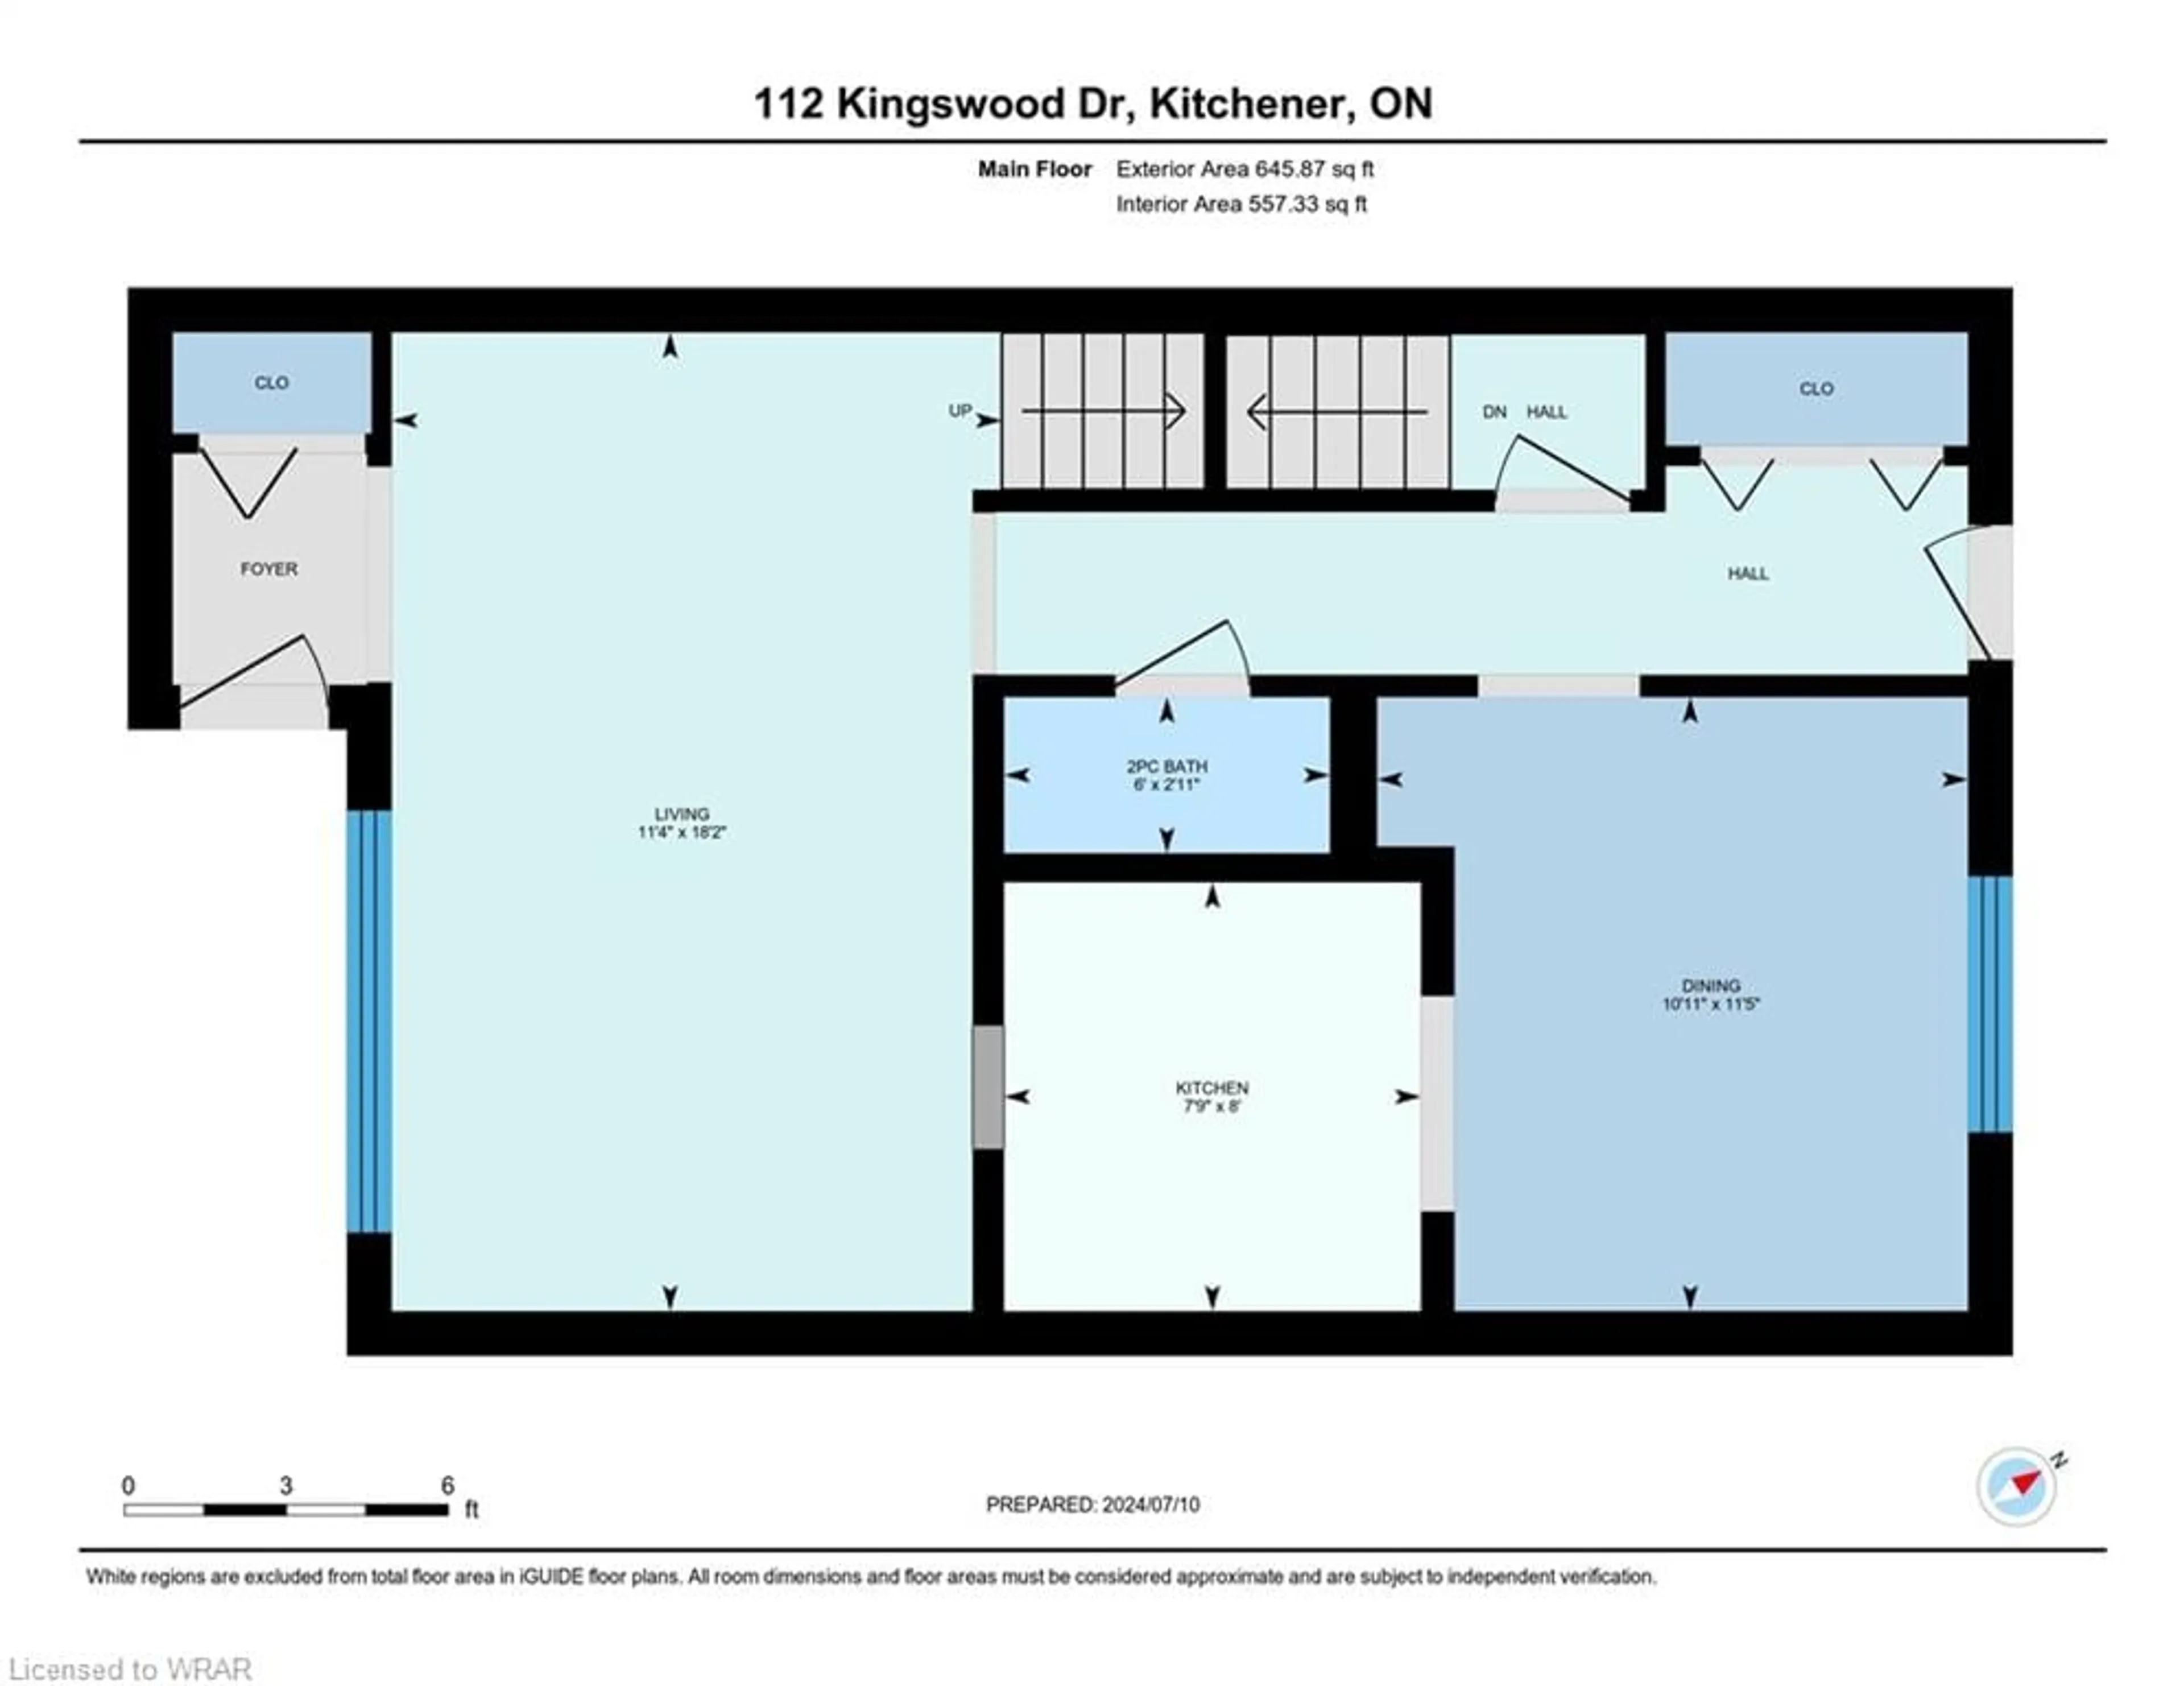 Floor plan for 112 Kingswood Dr #21, Kitchener Ontario N2E 1S9